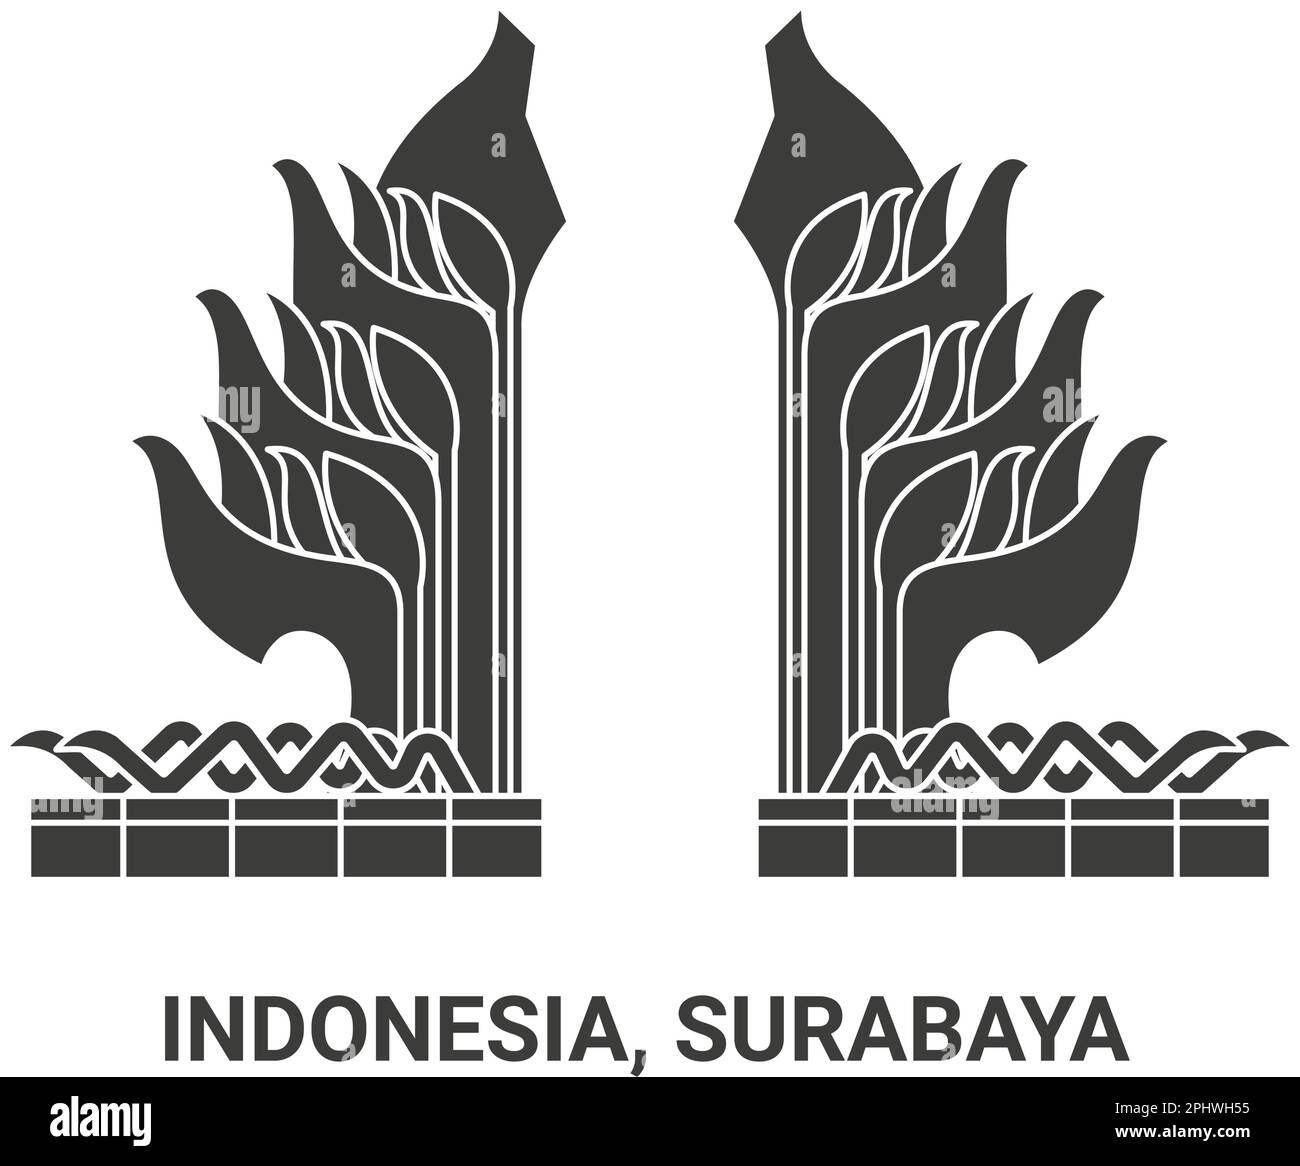 Indonesien, Surabaya Reise-Wahrzeichen-Vektordarstellung Stock Vektor